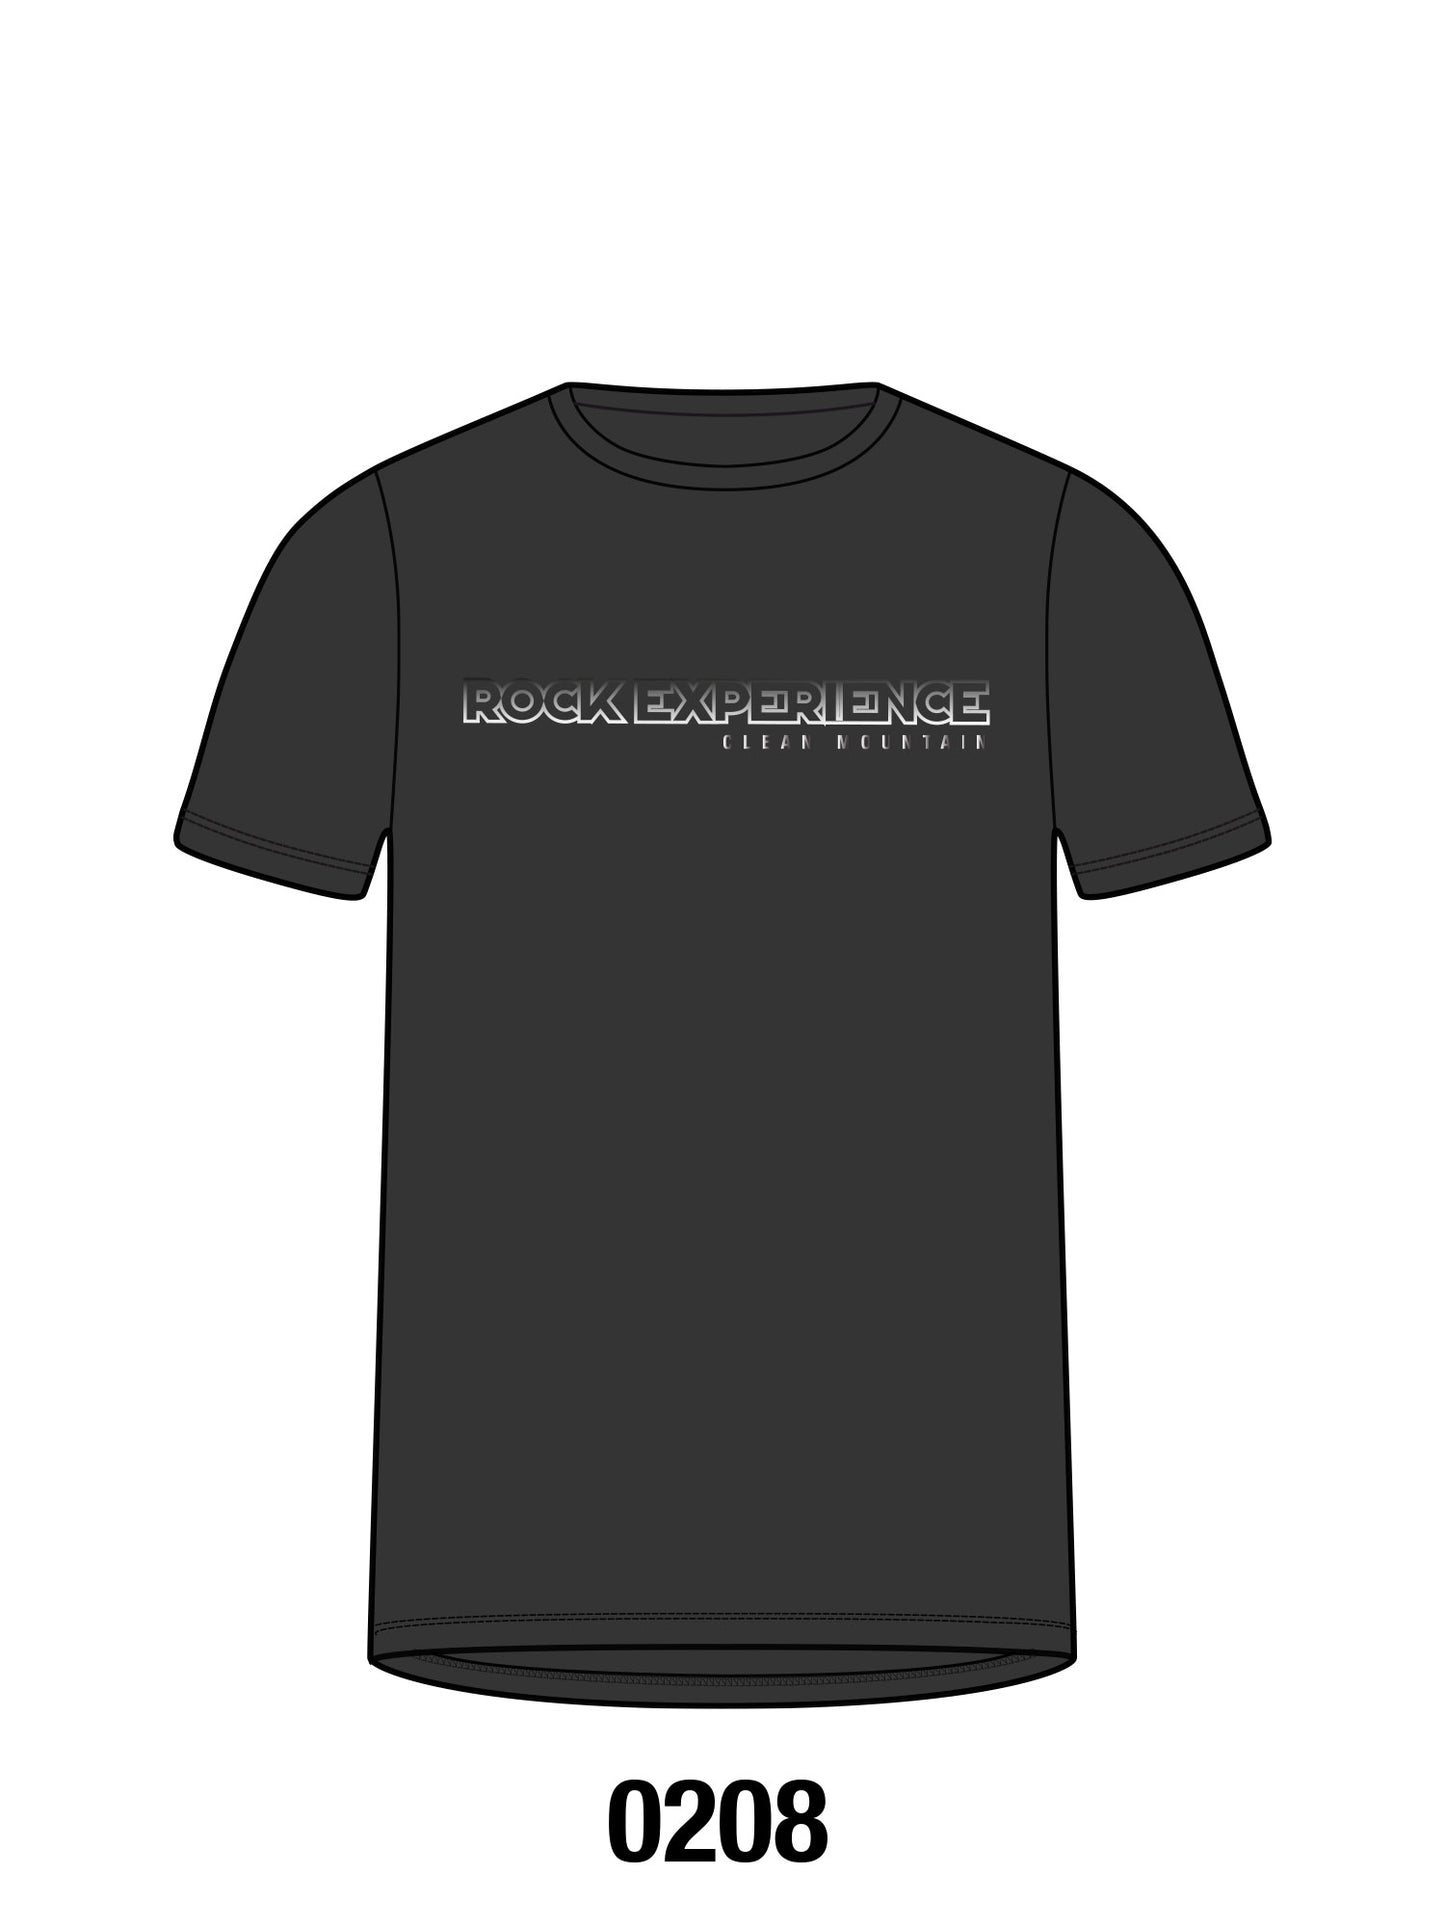 Adak P.1 Ss Man T-Shirt